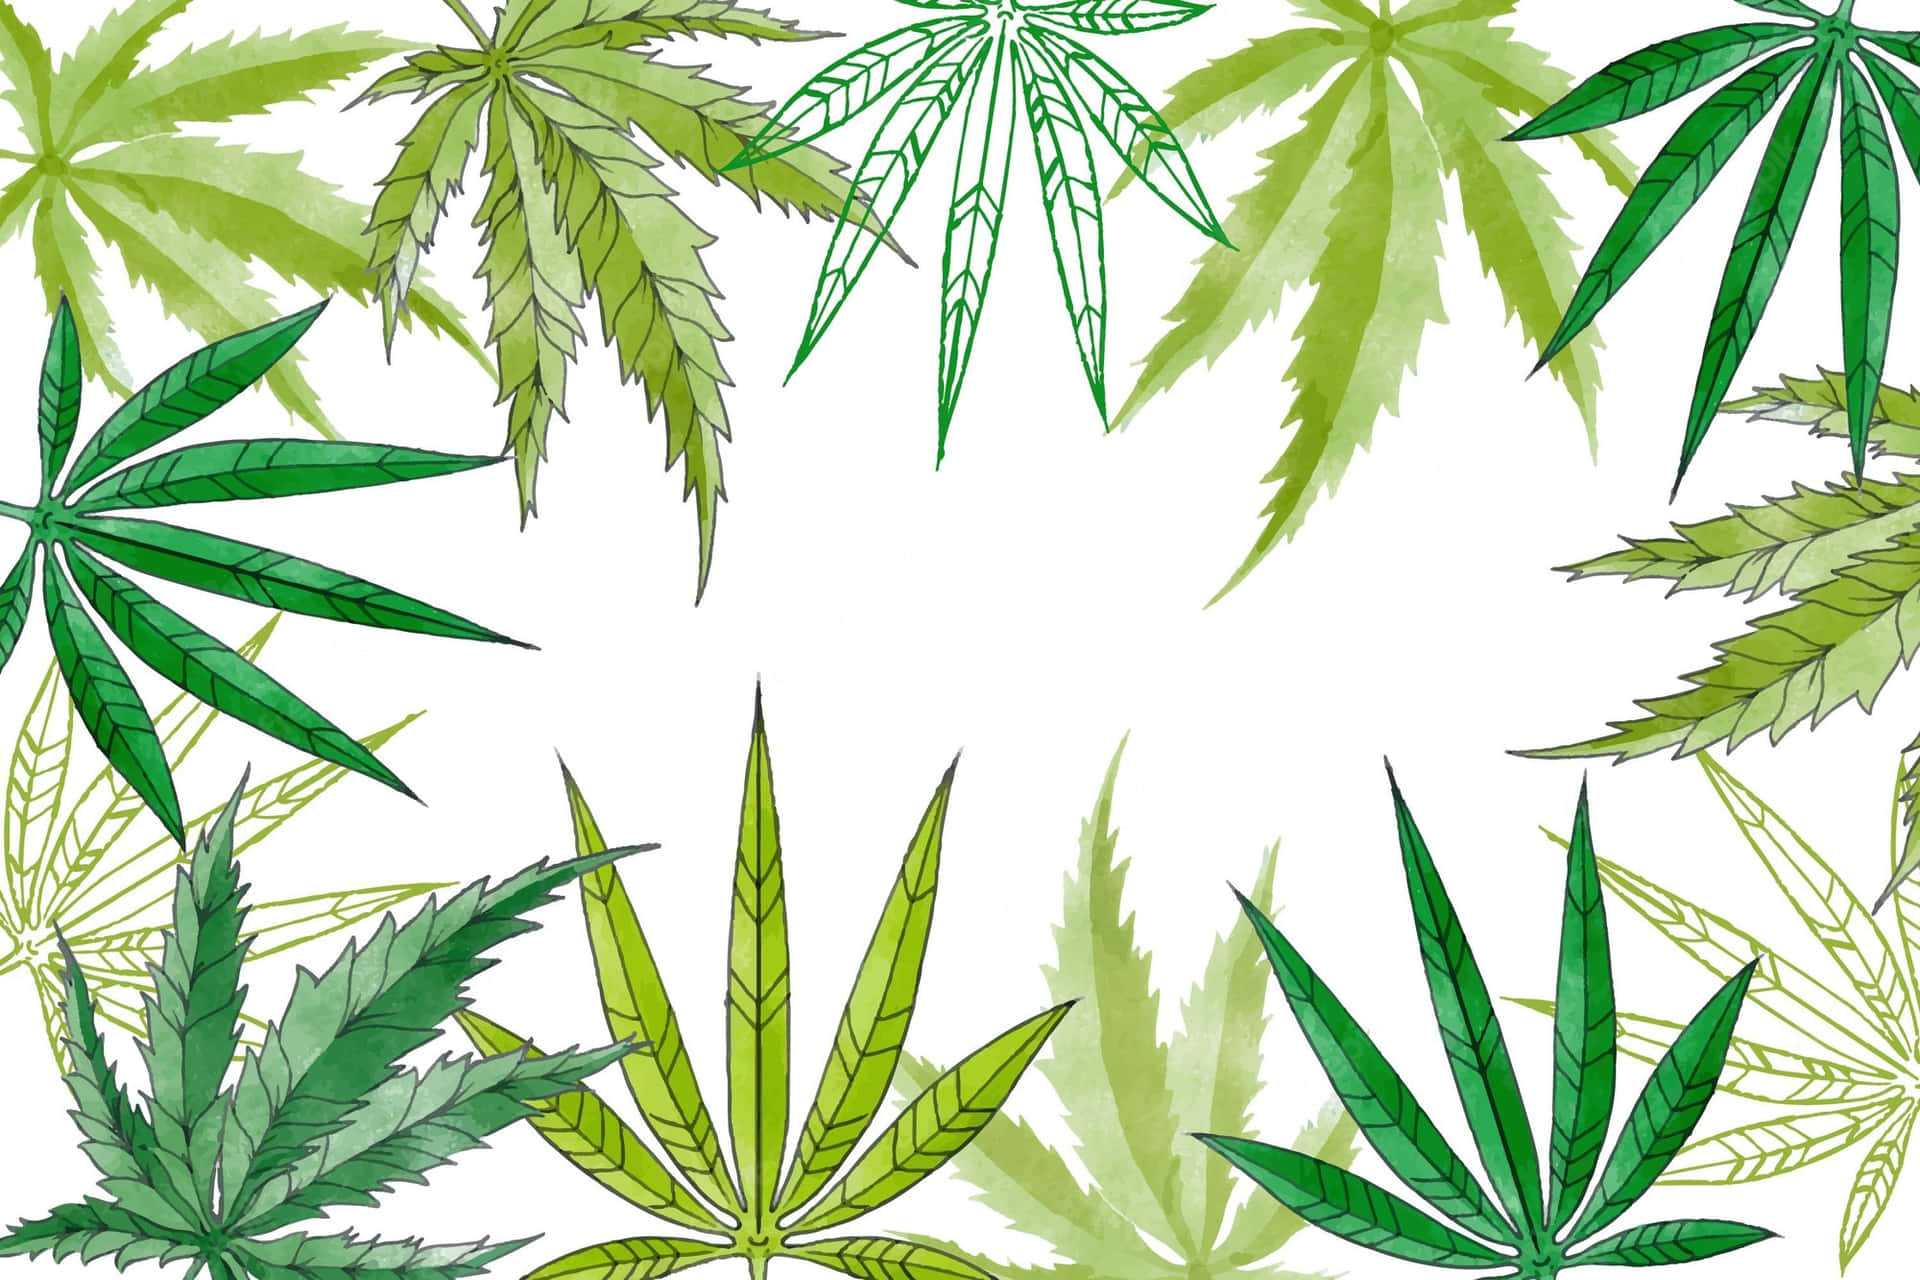 Marcoformado Por Una Hoja De Cannabis Fondo de pantalla